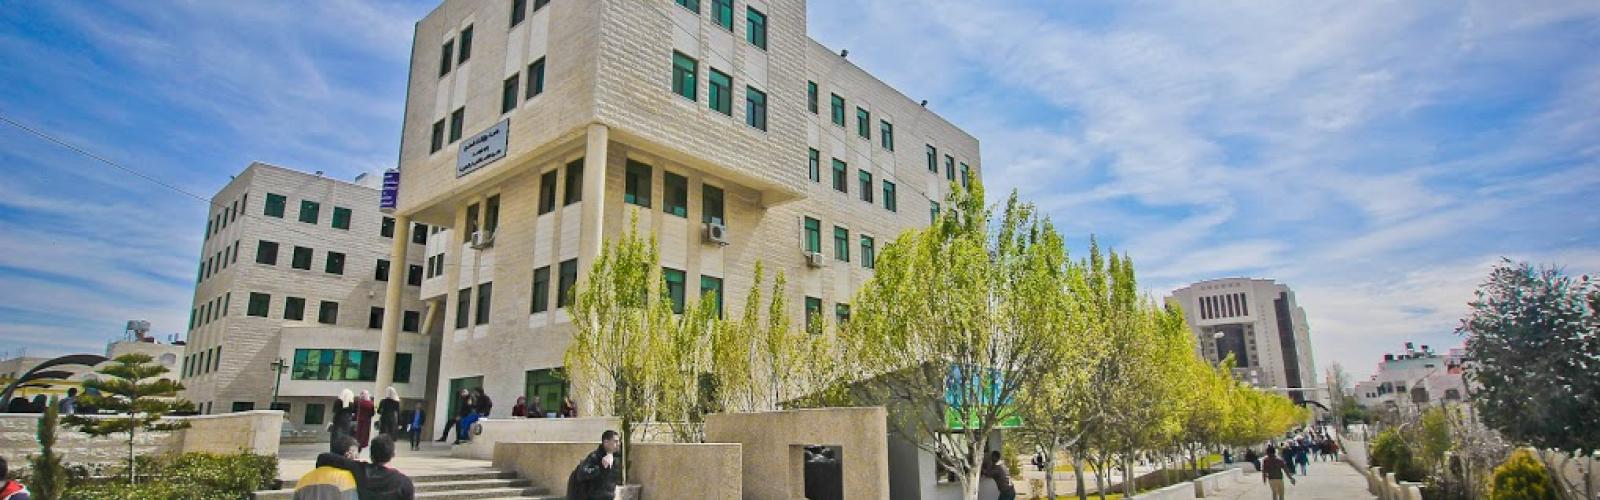 تأثير عسكرة جامعة بوليتكنك فلسطين على حرية الرأي